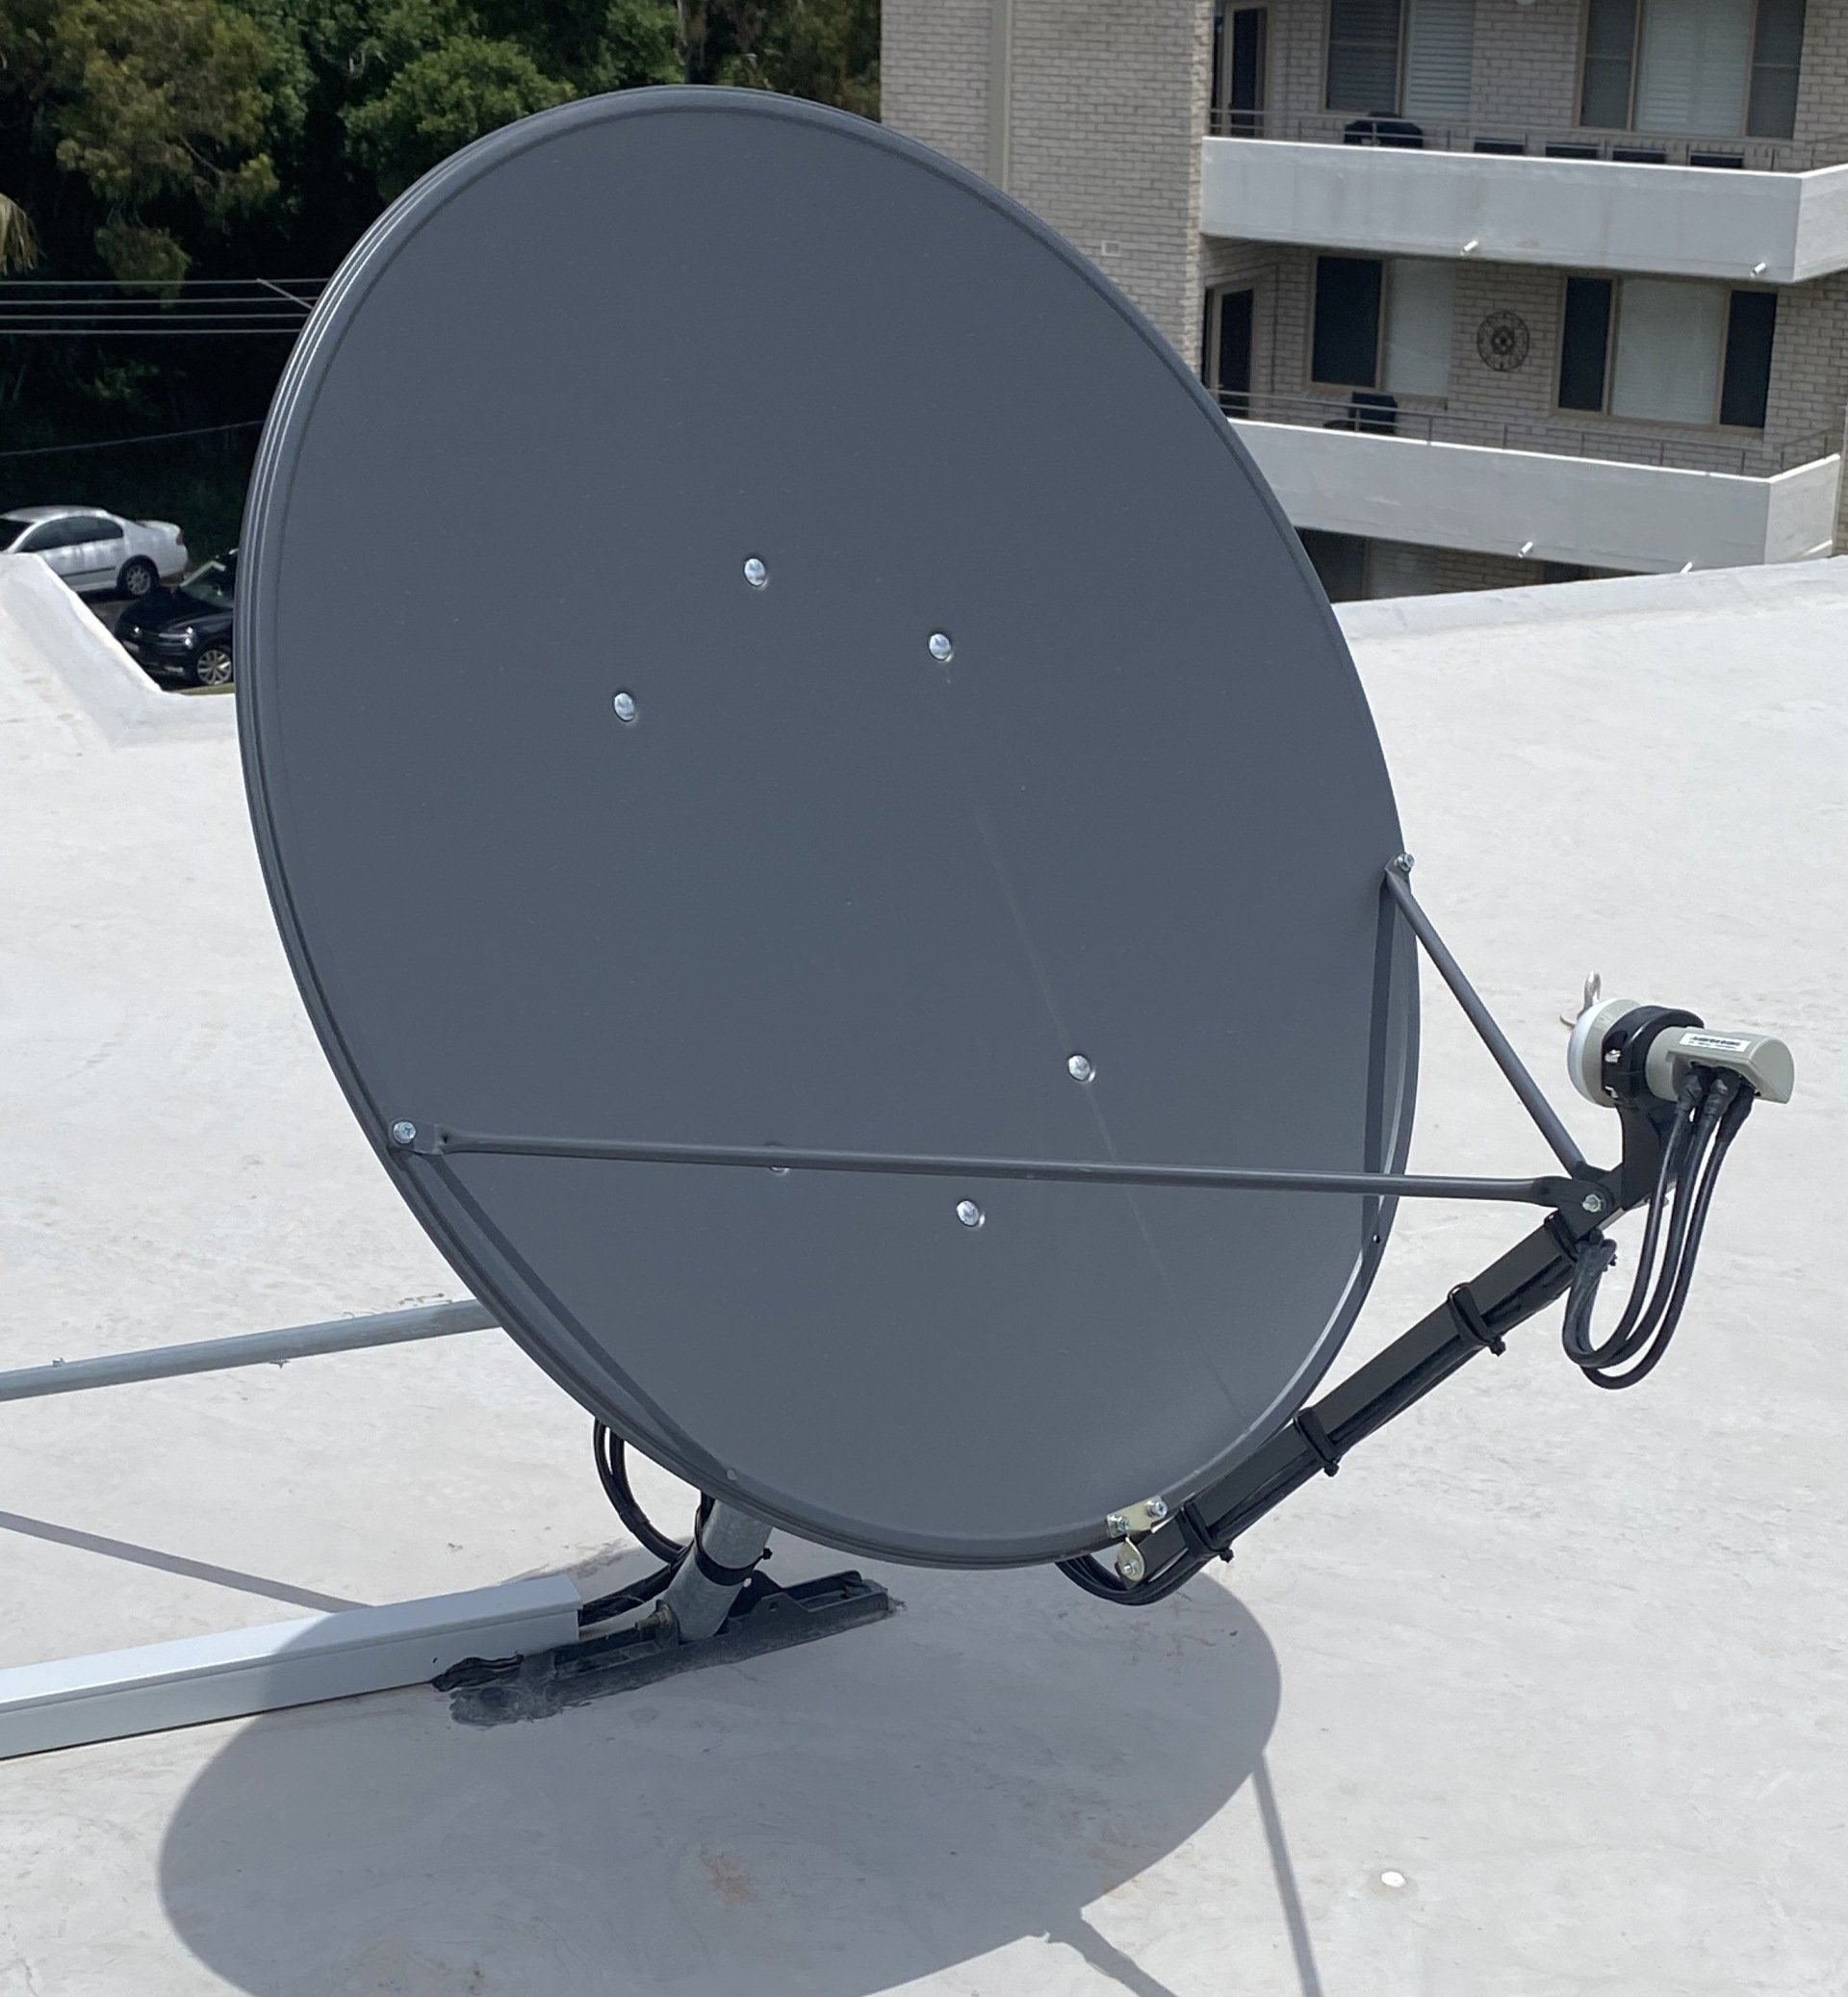 Satellite Vast installed on roof